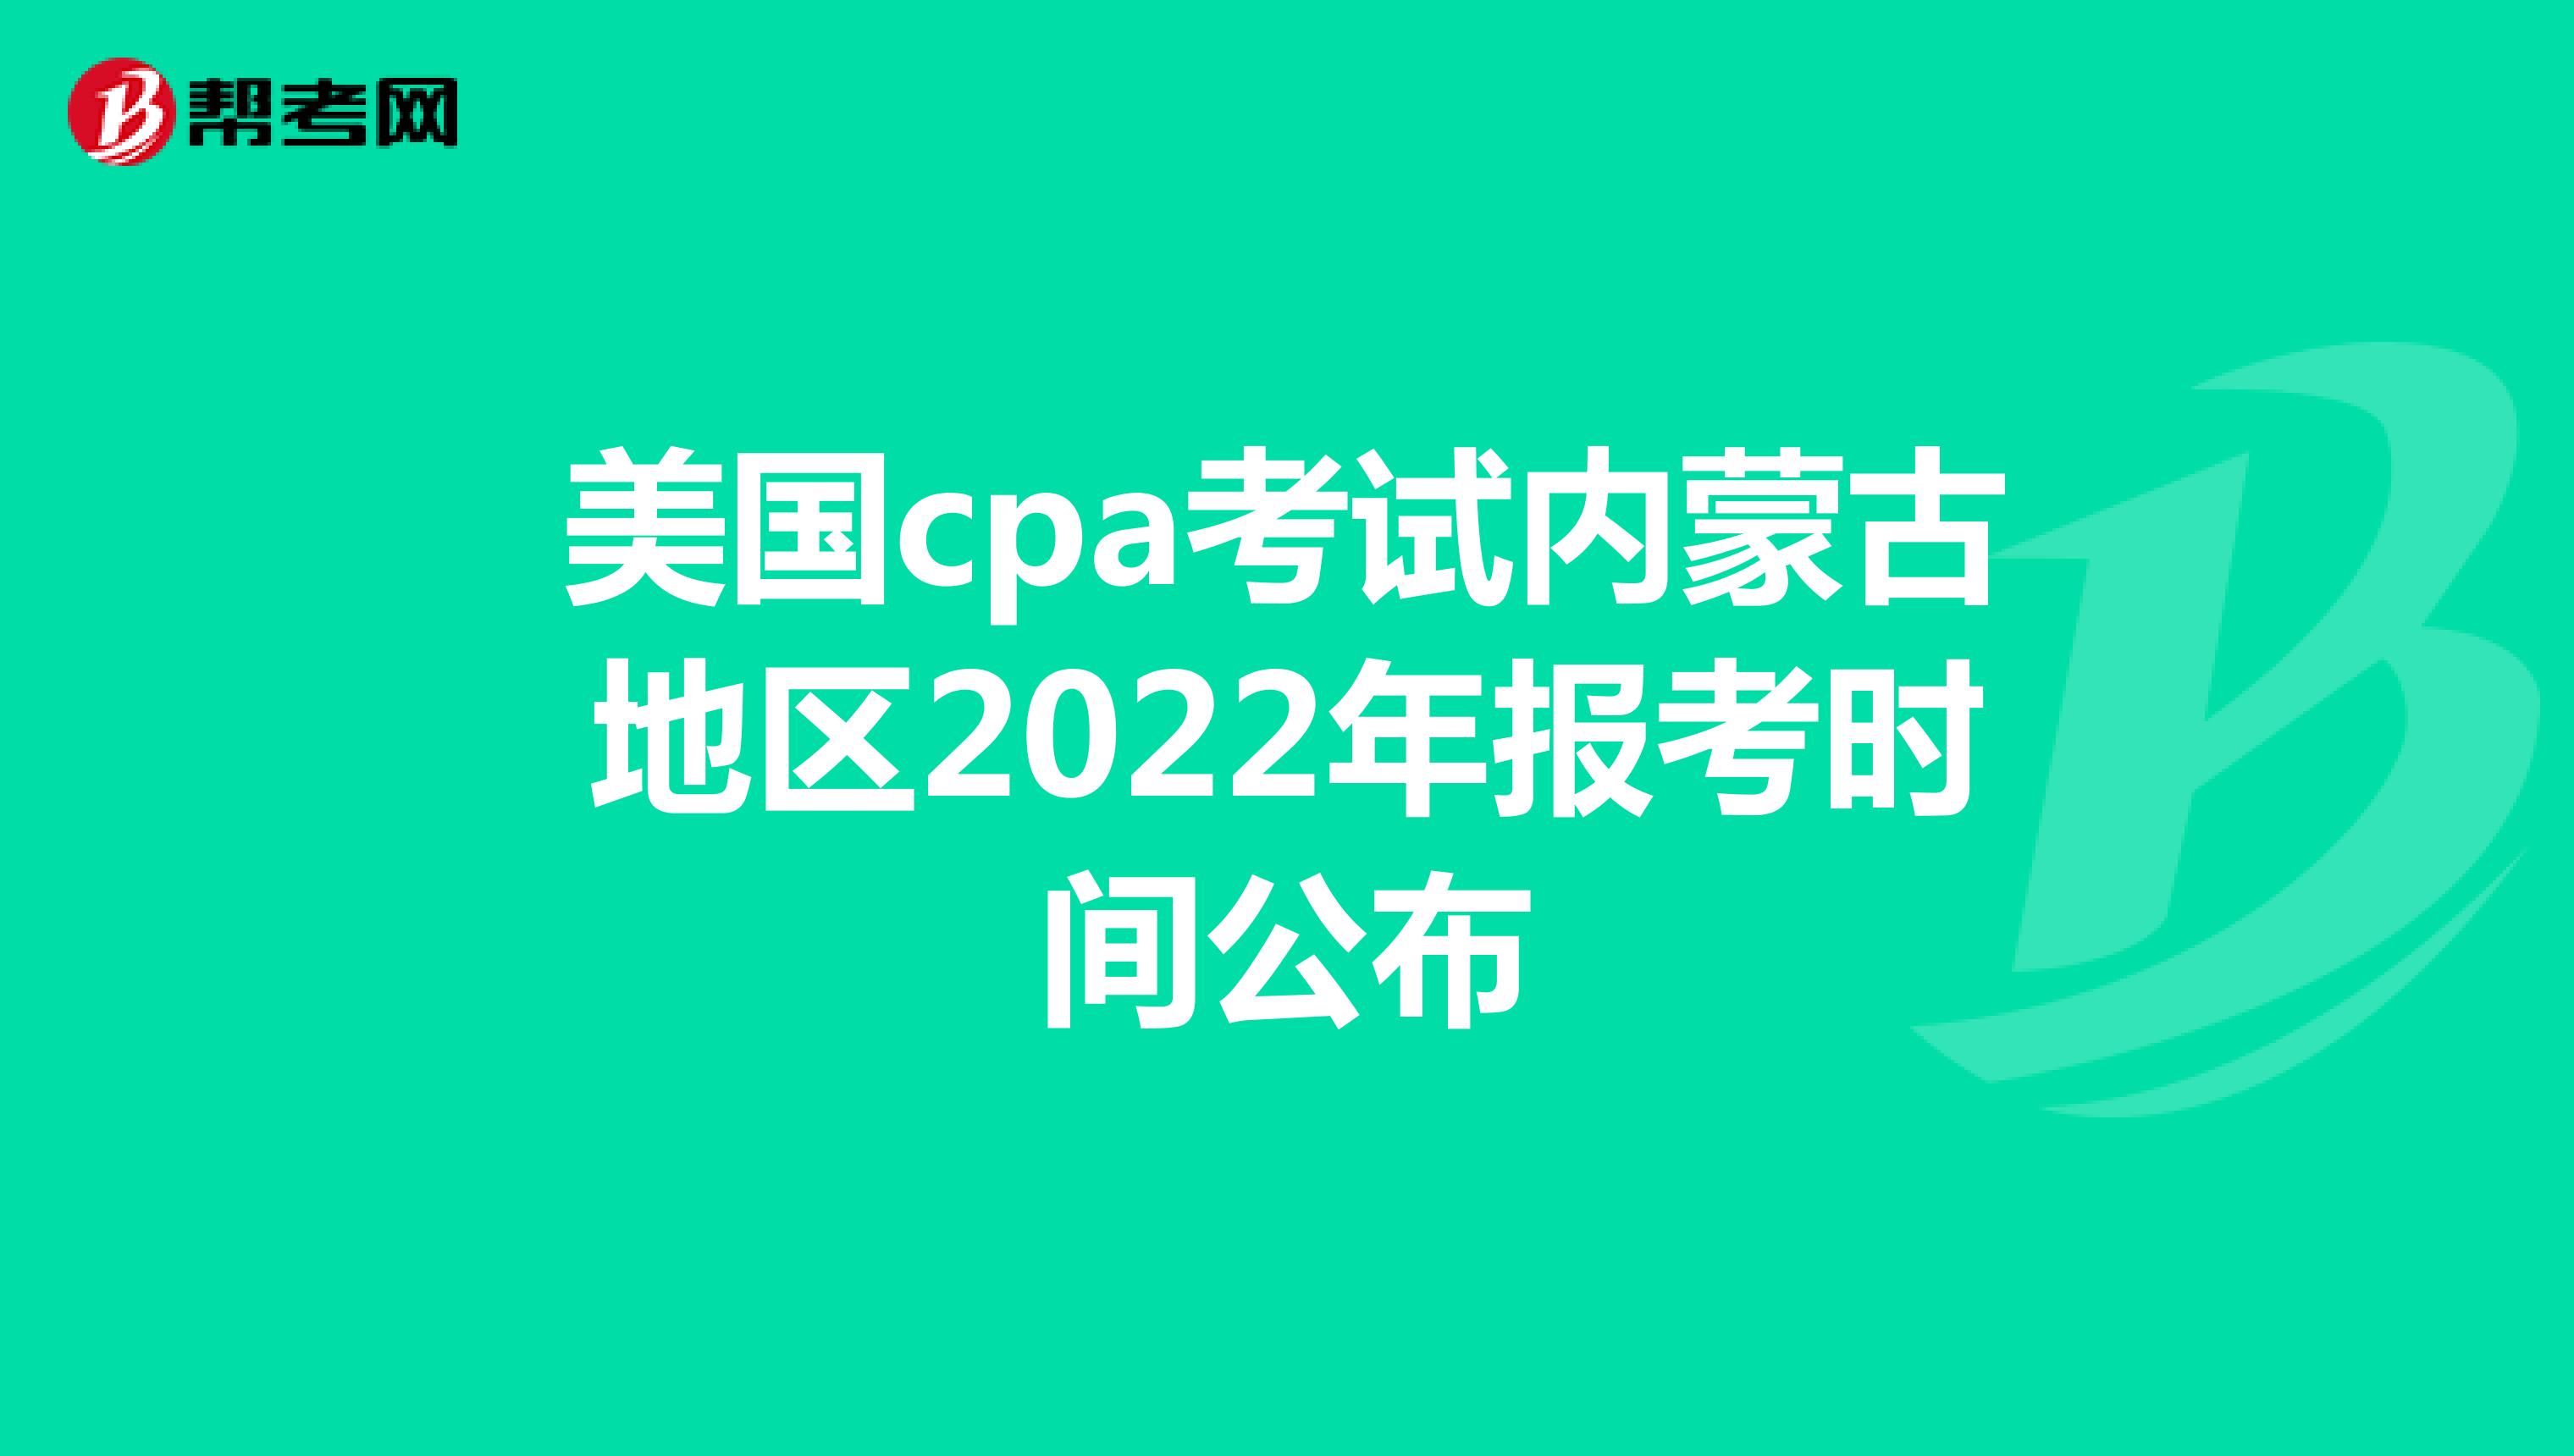 美国cpa考试内蒙古地区2022年报考时间公布